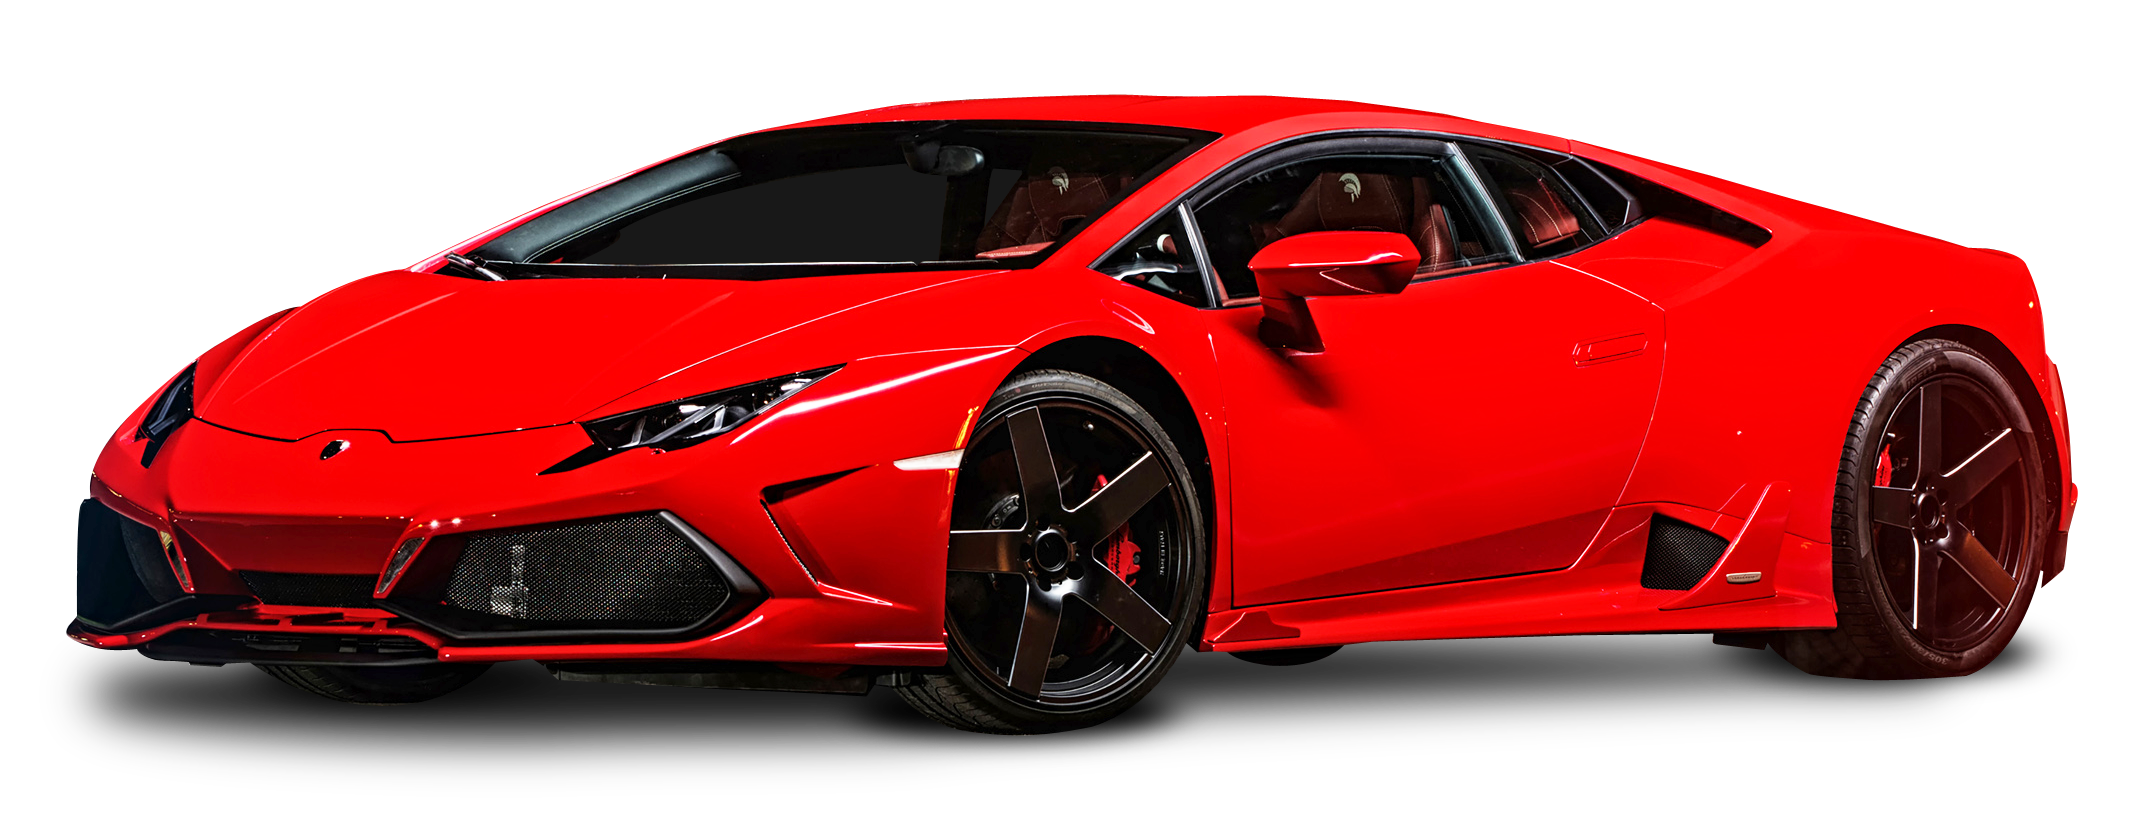 Imagen de PNG gratis de Lamborghini rojo